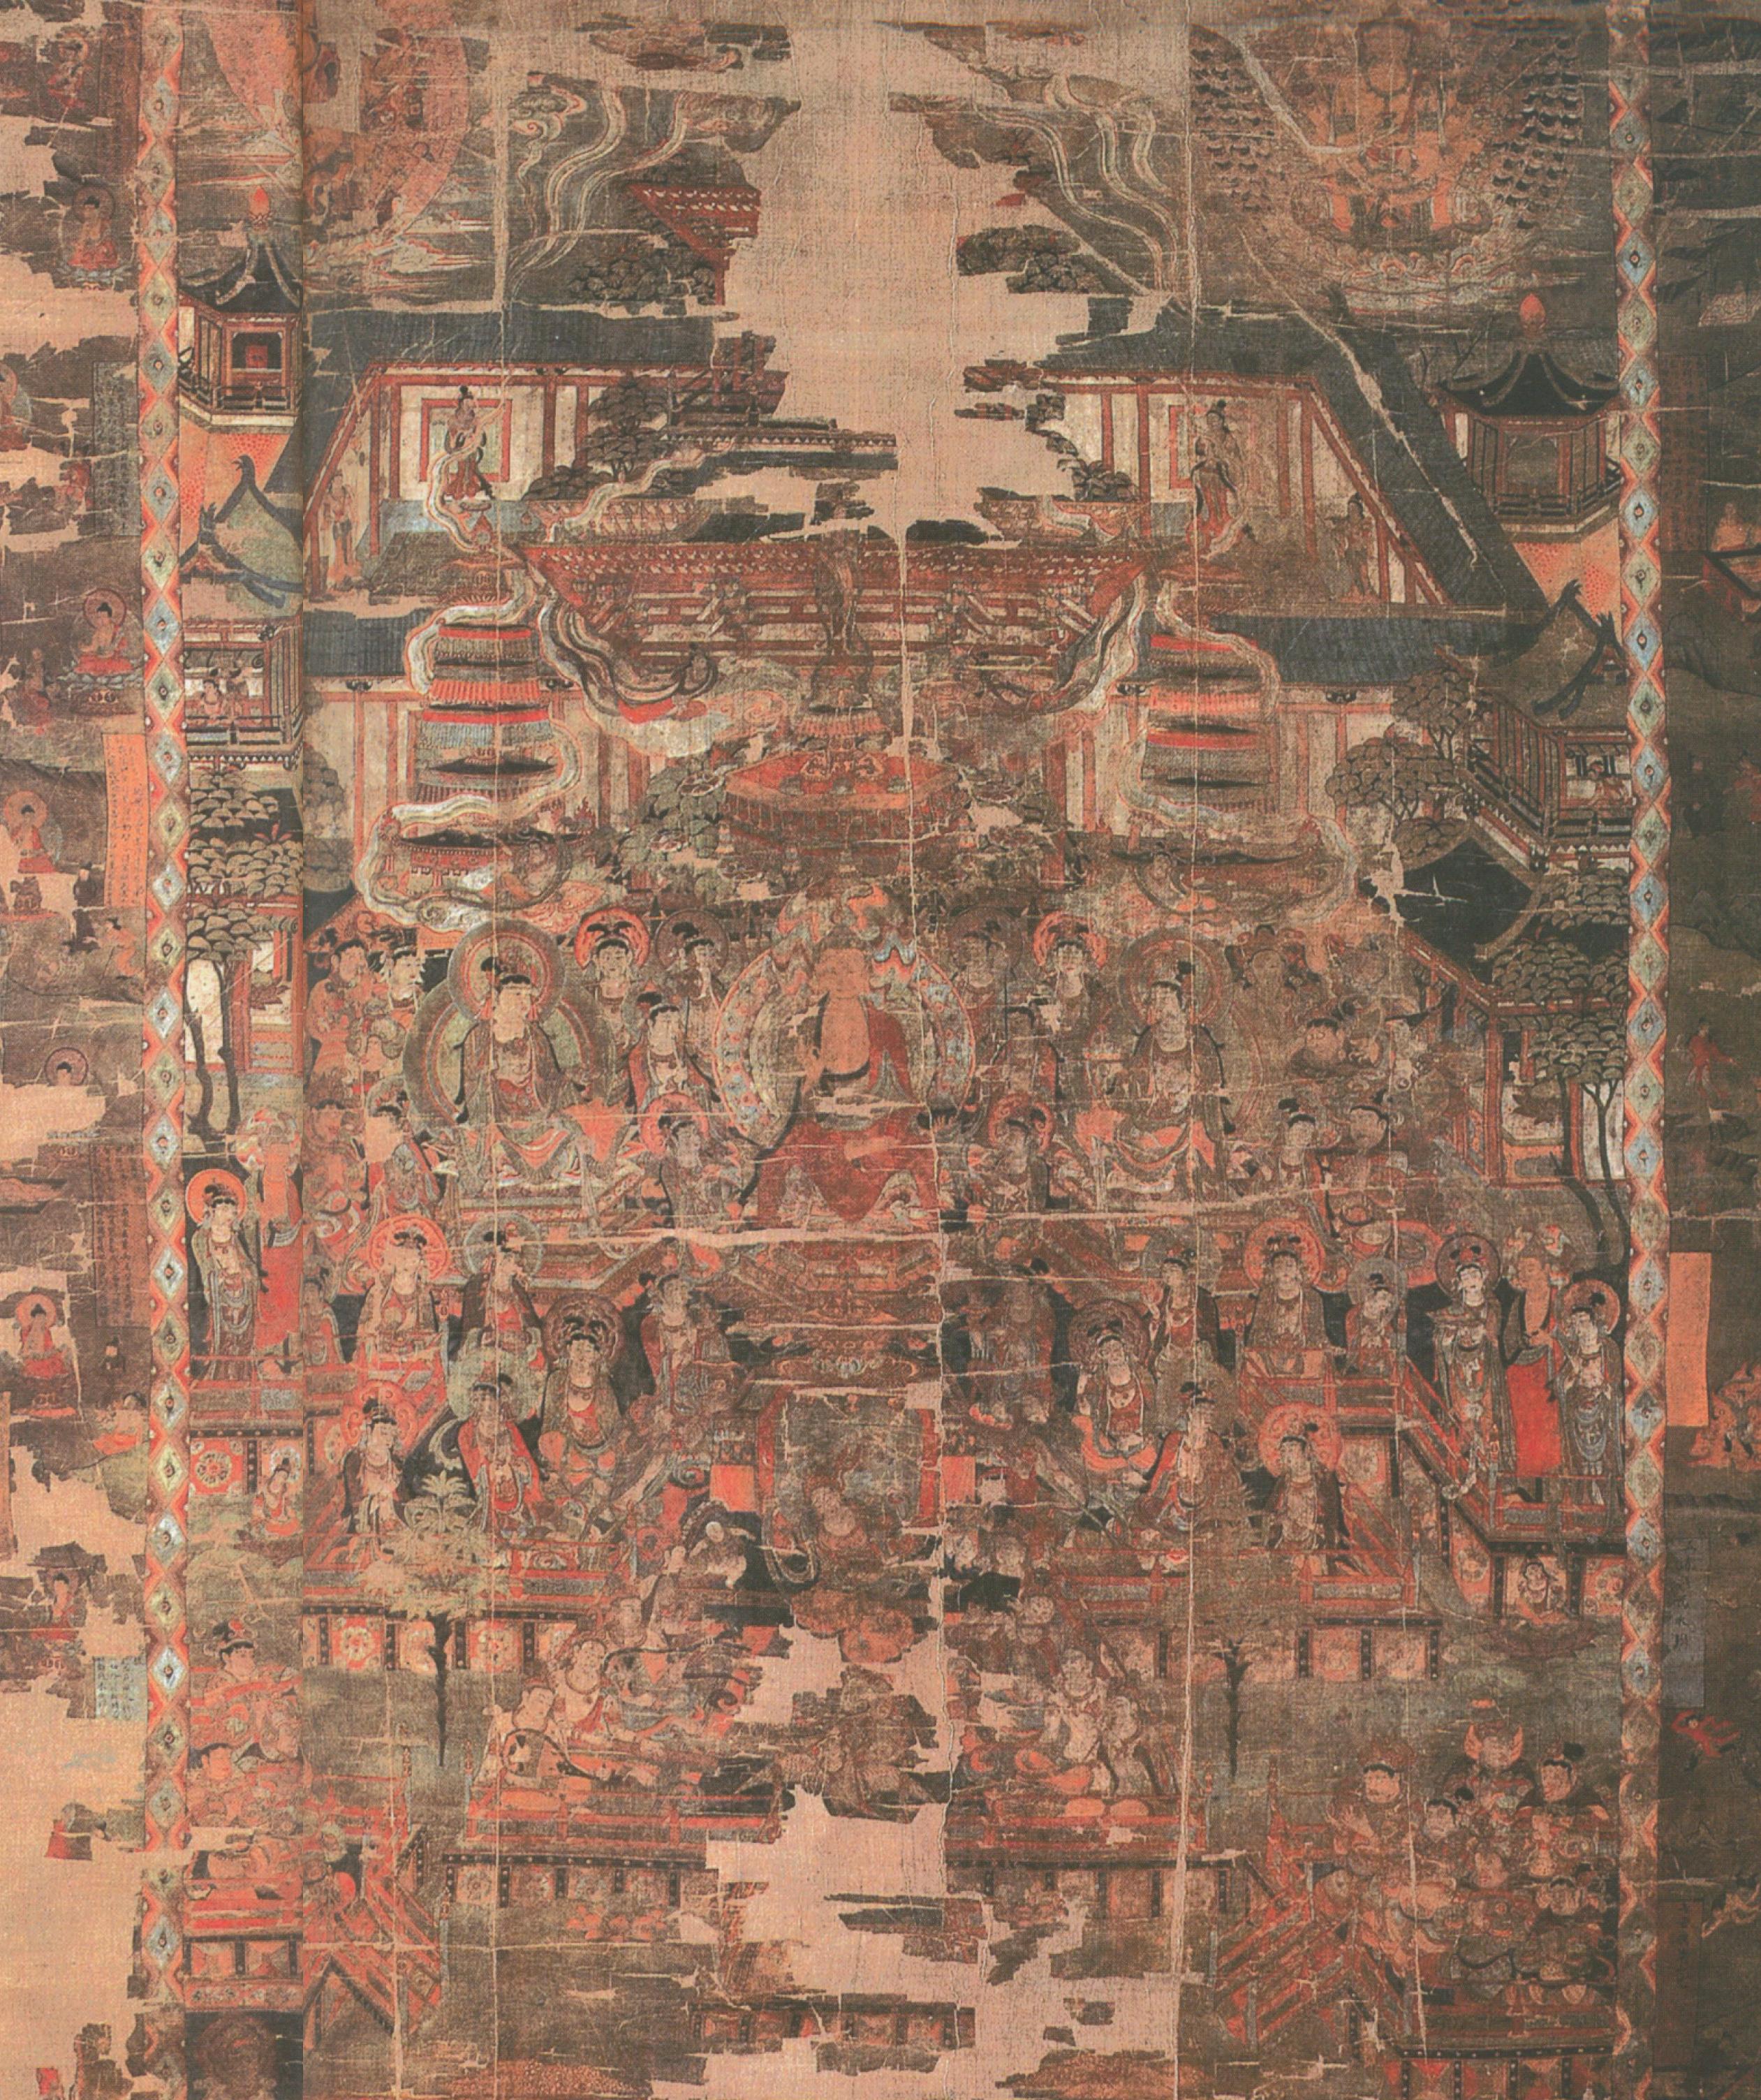 第一节 佛教思想与中国绘画的渊源